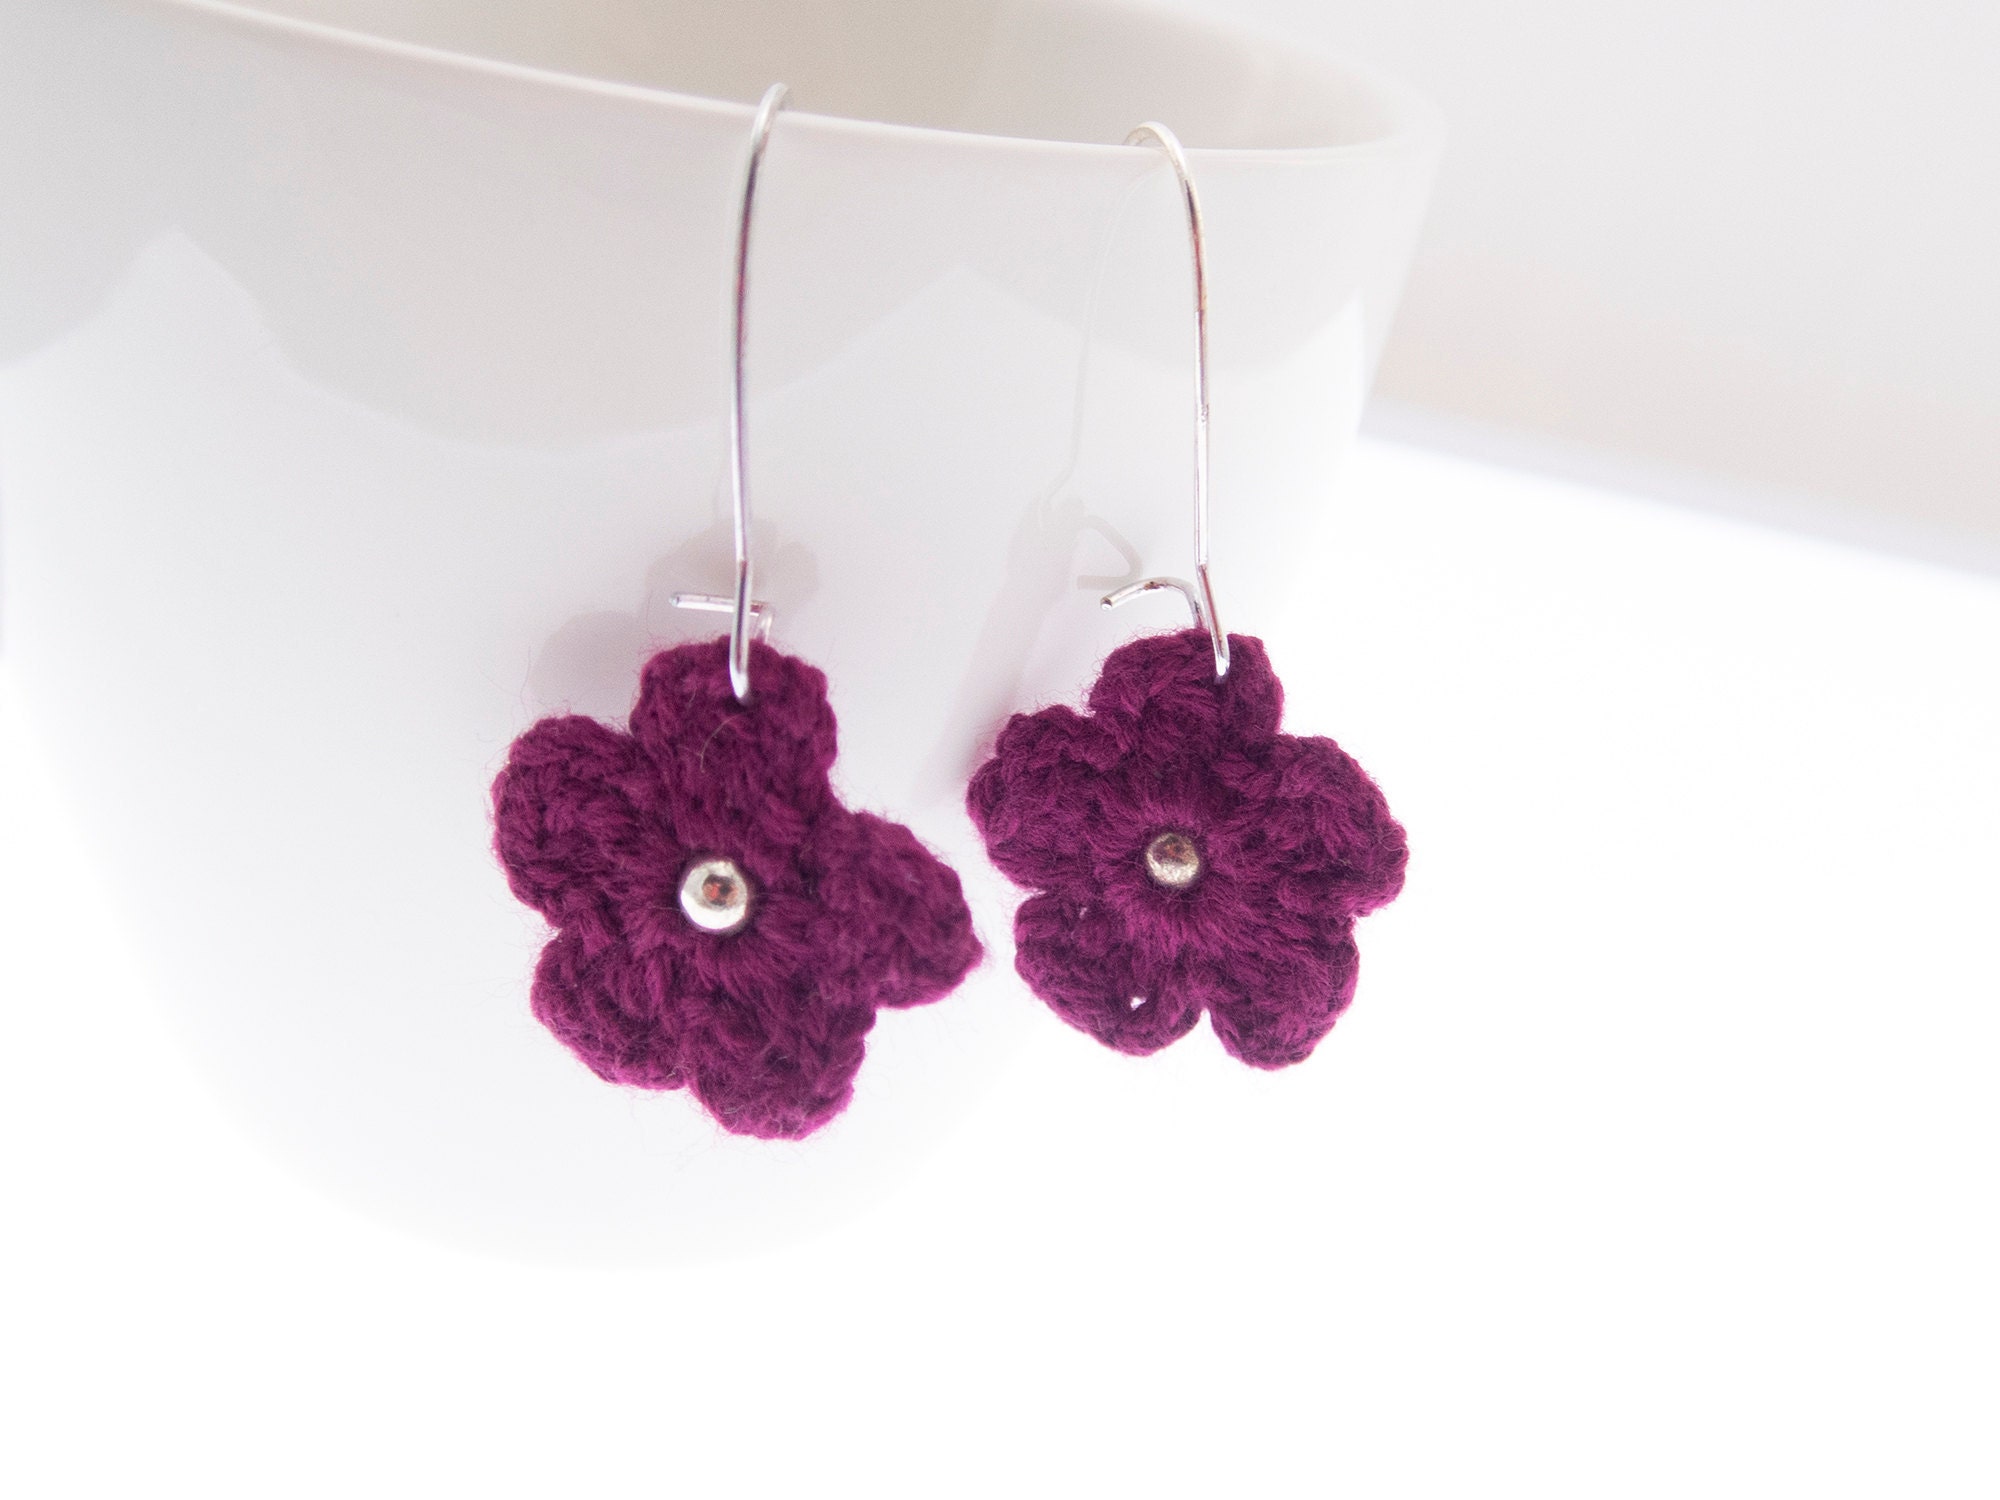 earrings handmade dangle with boho knit flowers